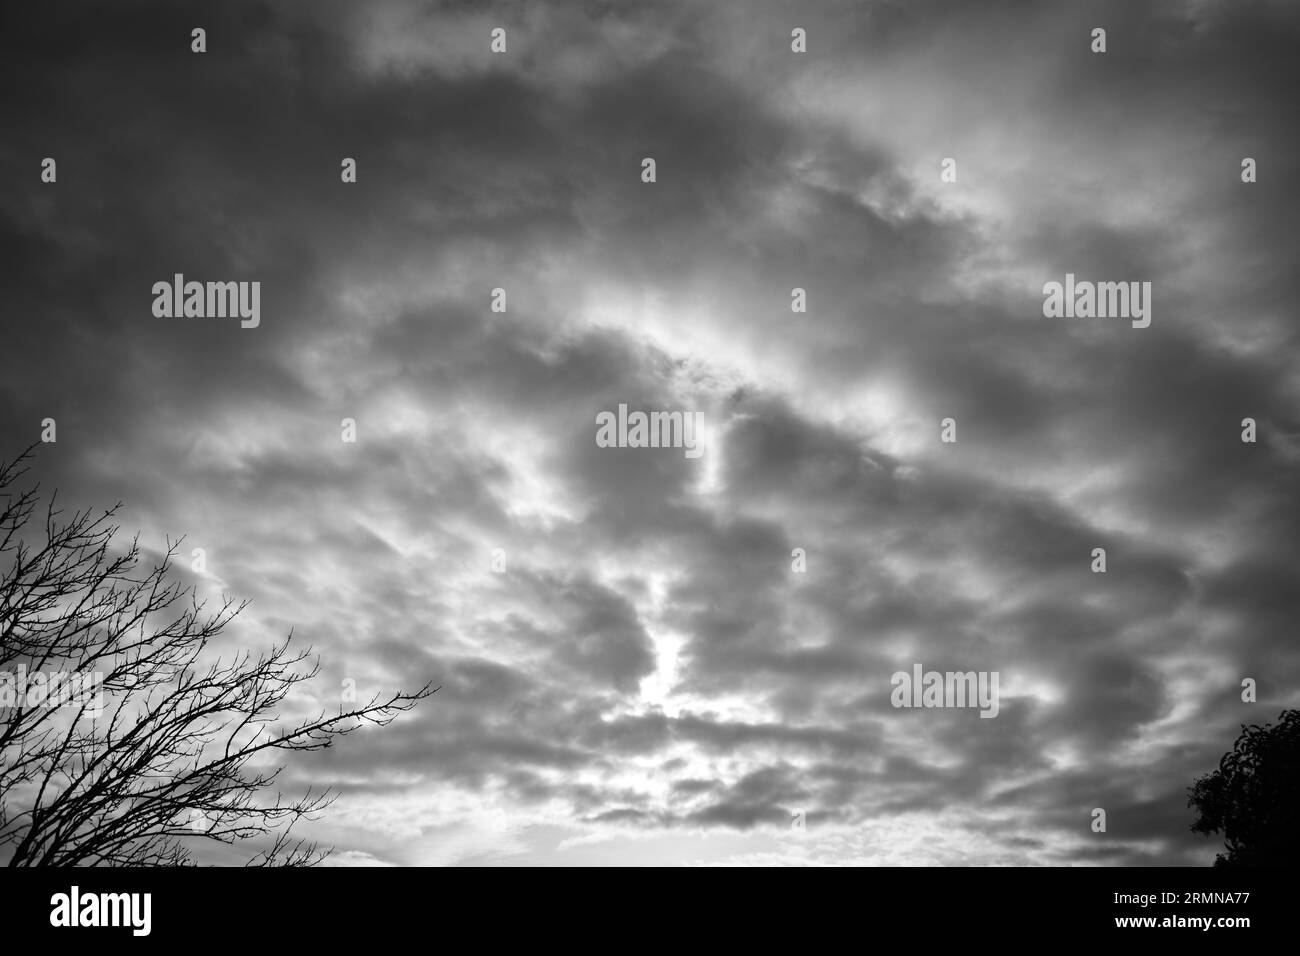 Alberi e cielo con nuvole in bianco e nero sparati in una nuvolosa mattinata fredda in un piccolo villaggio della Grecia. Foto Stock